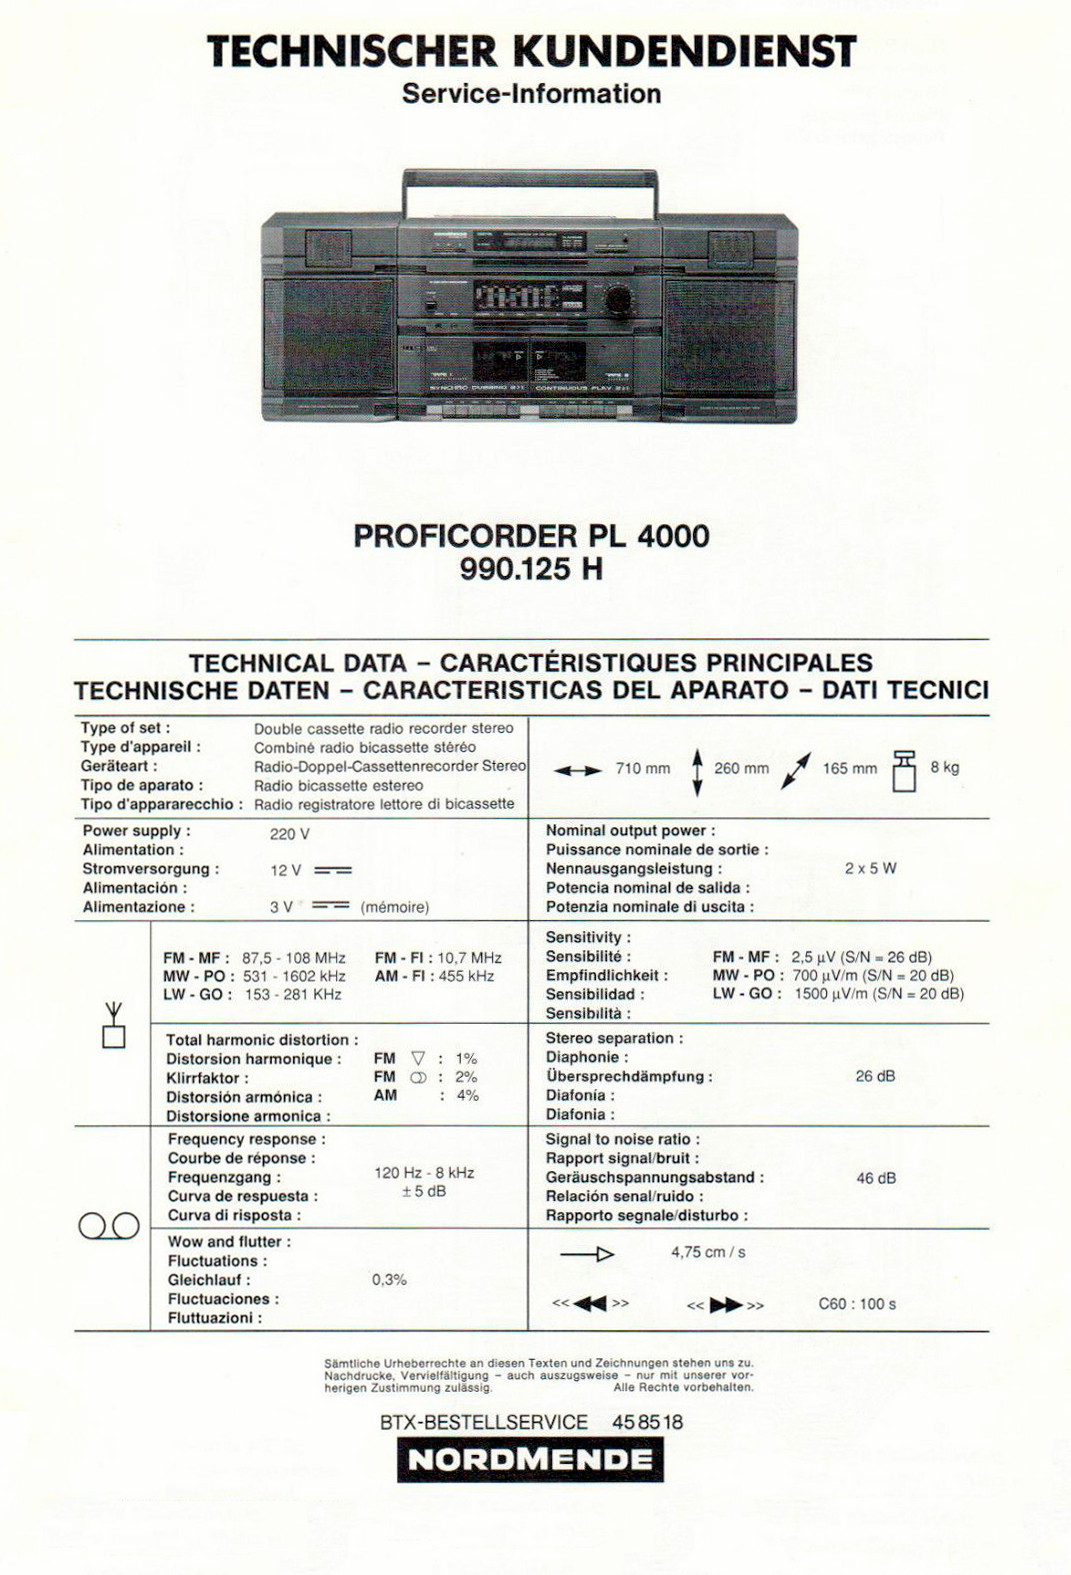 Nordmende Proficorder PL-4000-Daten-1991.jpg